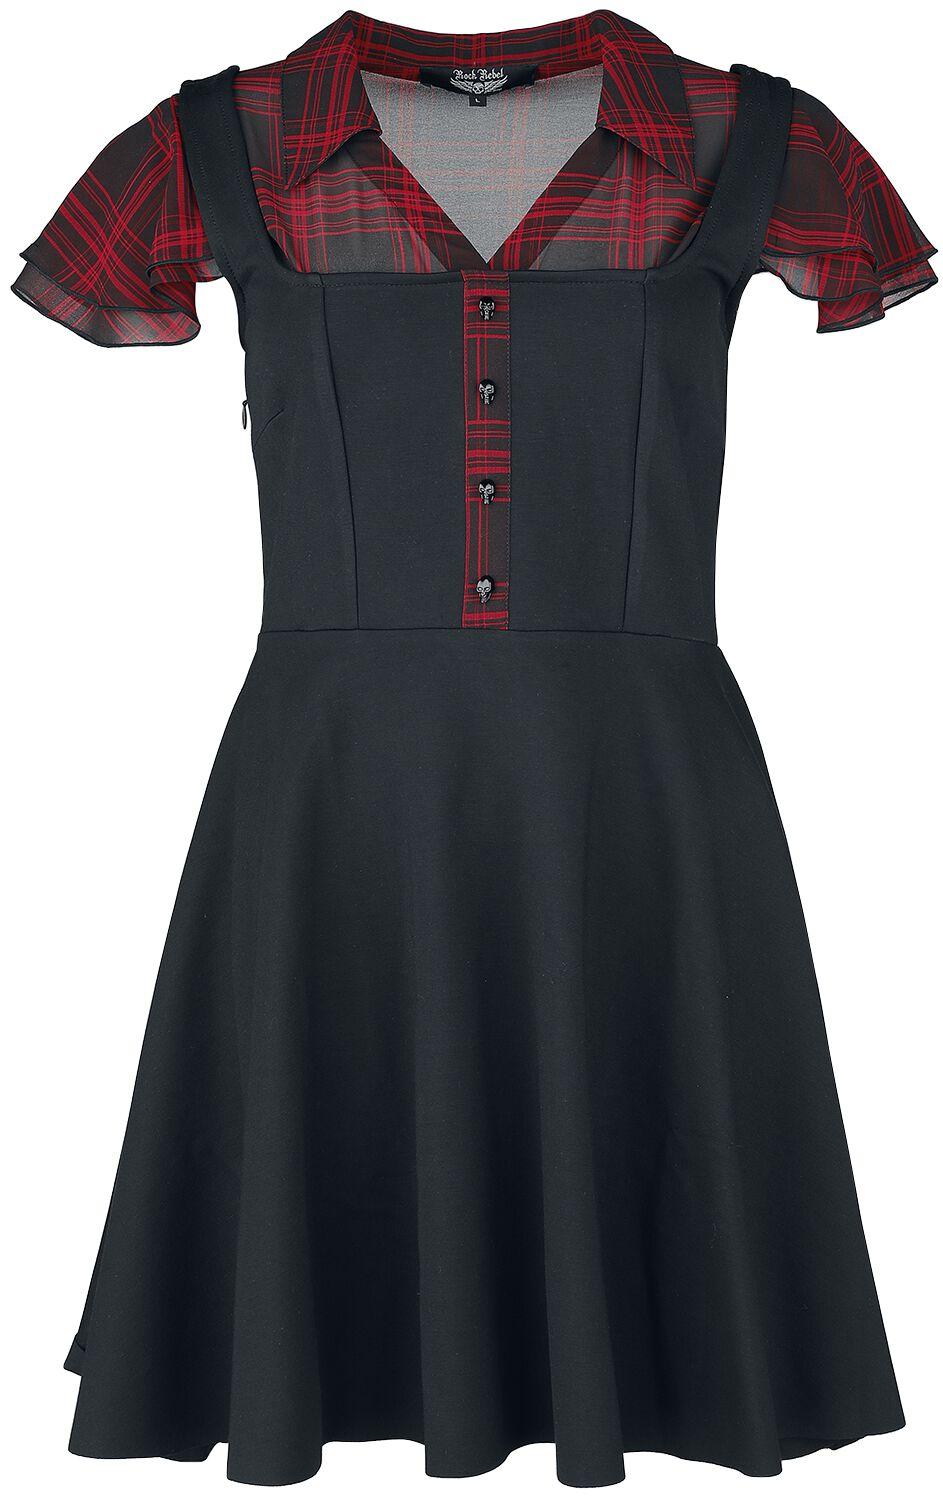 Rock Rebel by EMP Rock Kurzes Kleid Layer Look Kleid mit karierter Bluse S bis XXL für Damen Größe M rot schwarz  - Onlineshop EMP